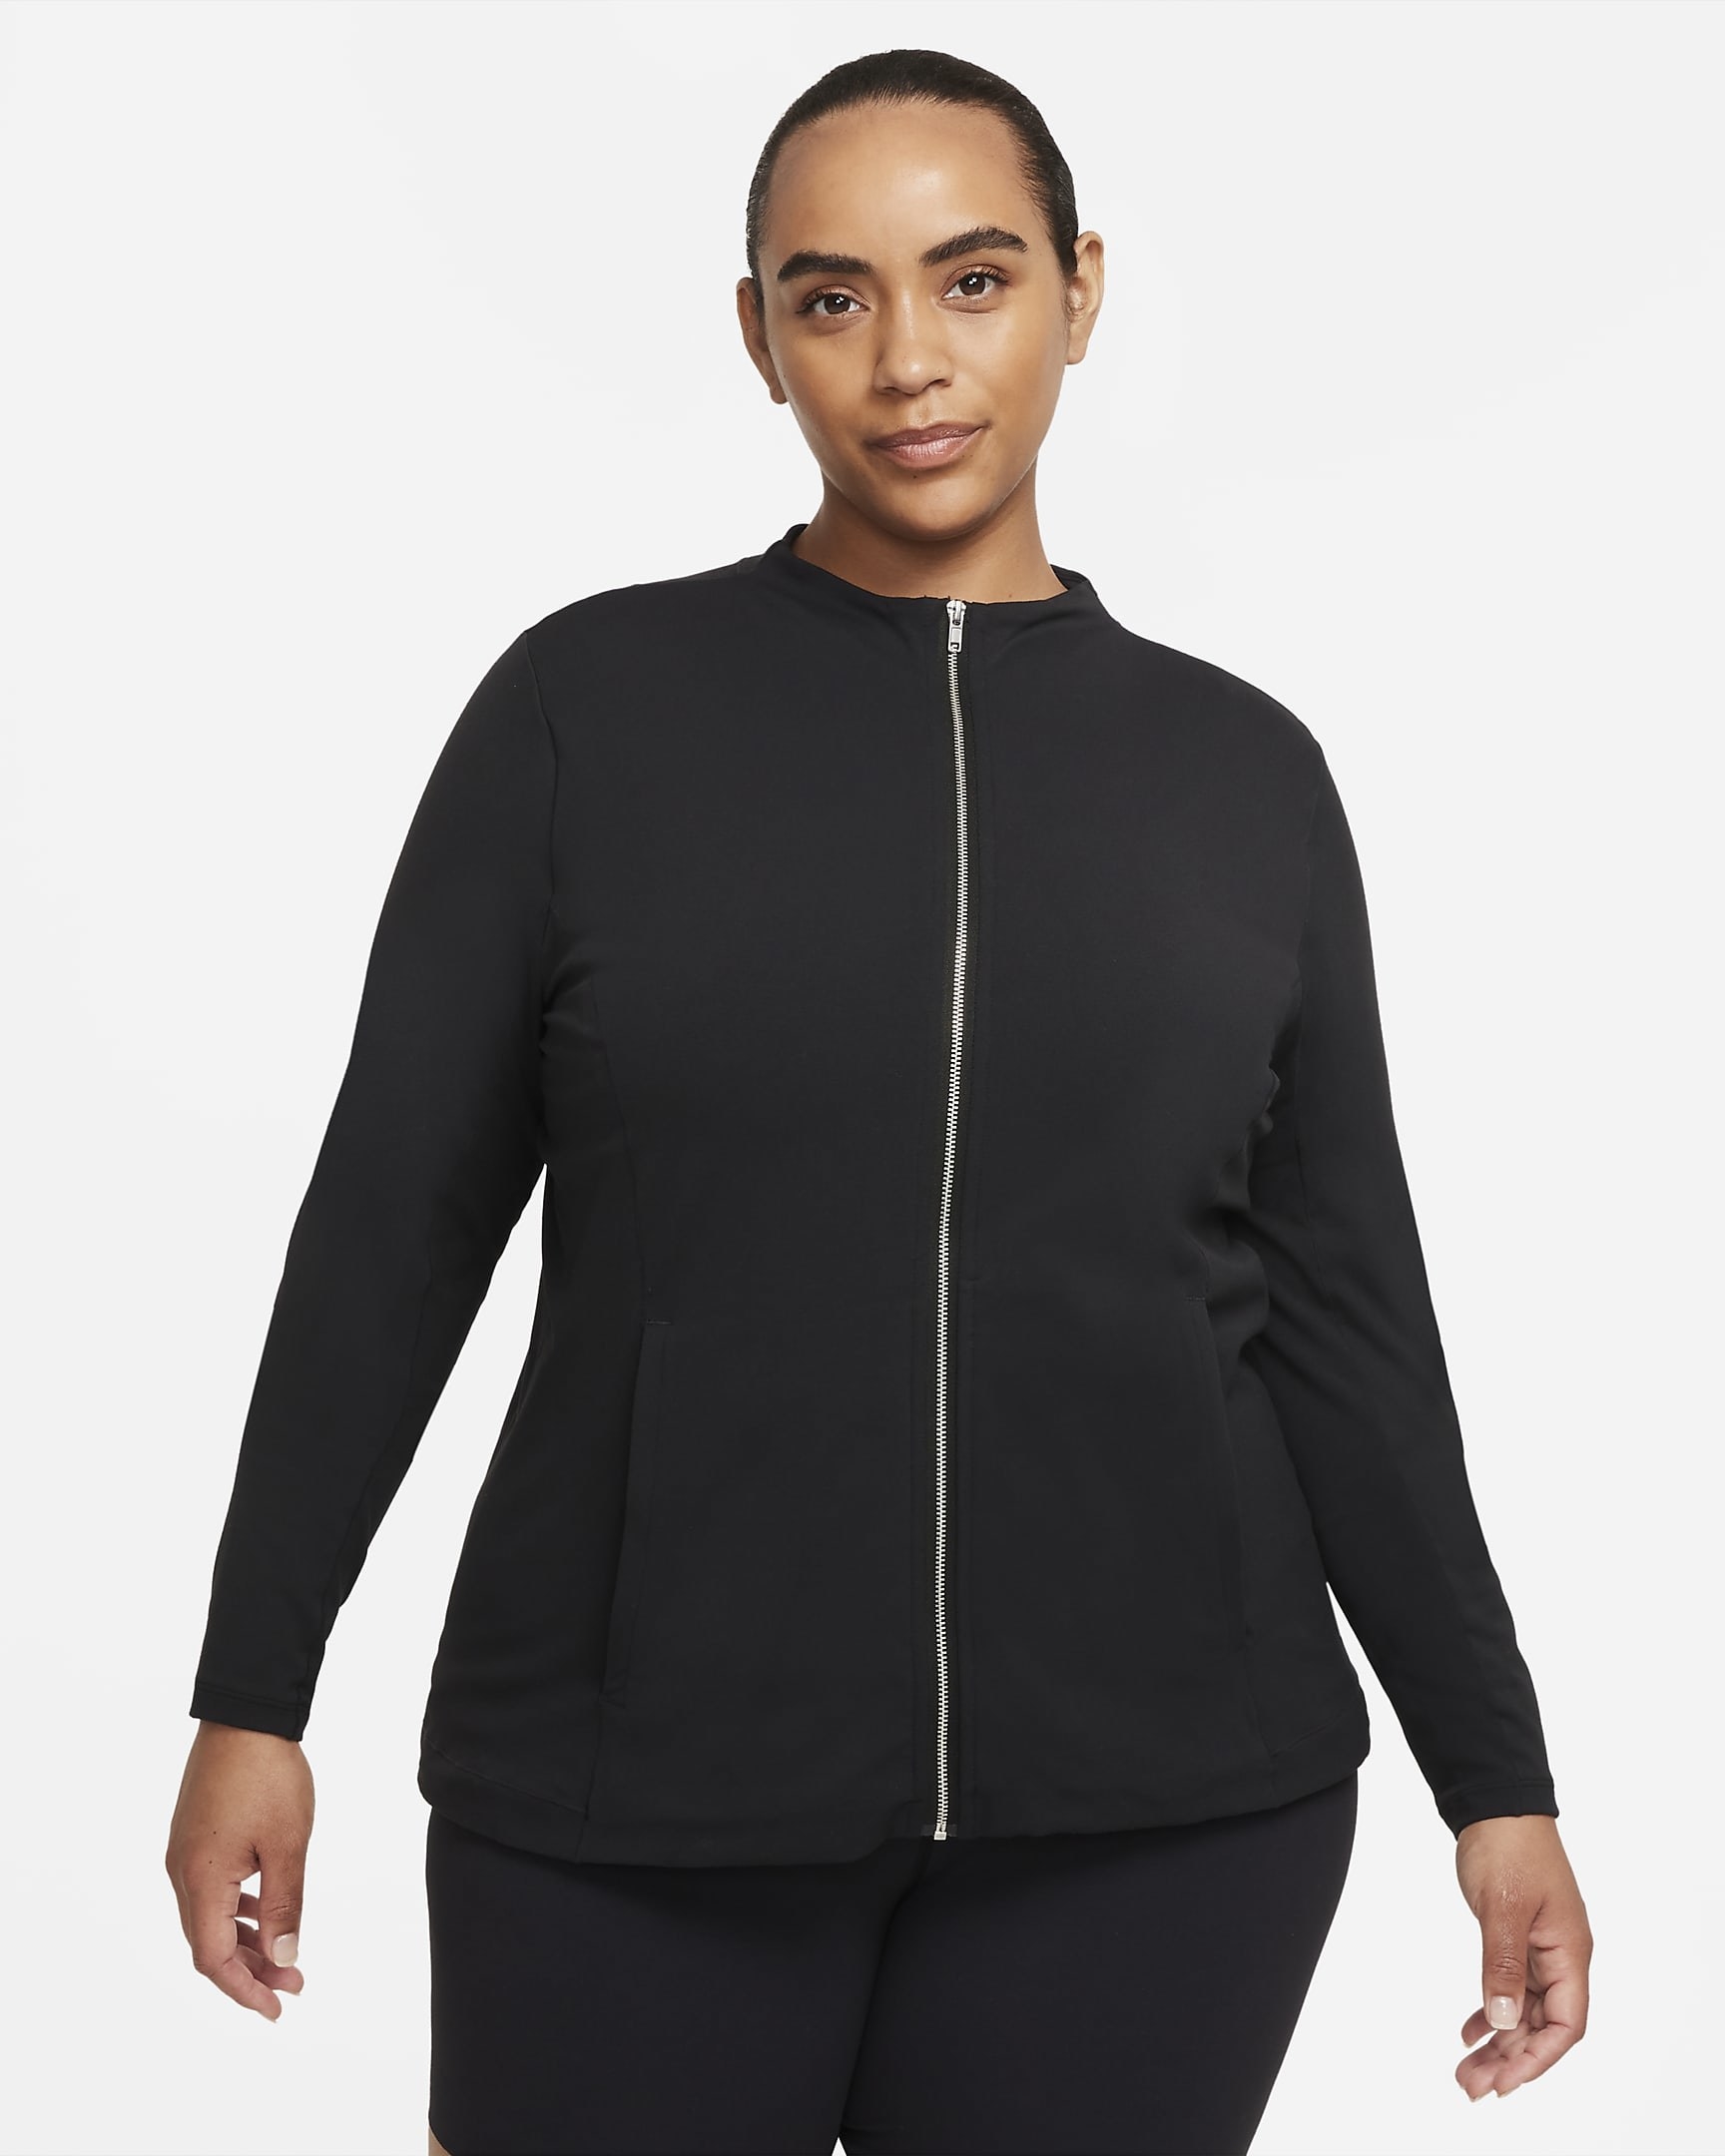 model in black long-sleeve zip-up jacket